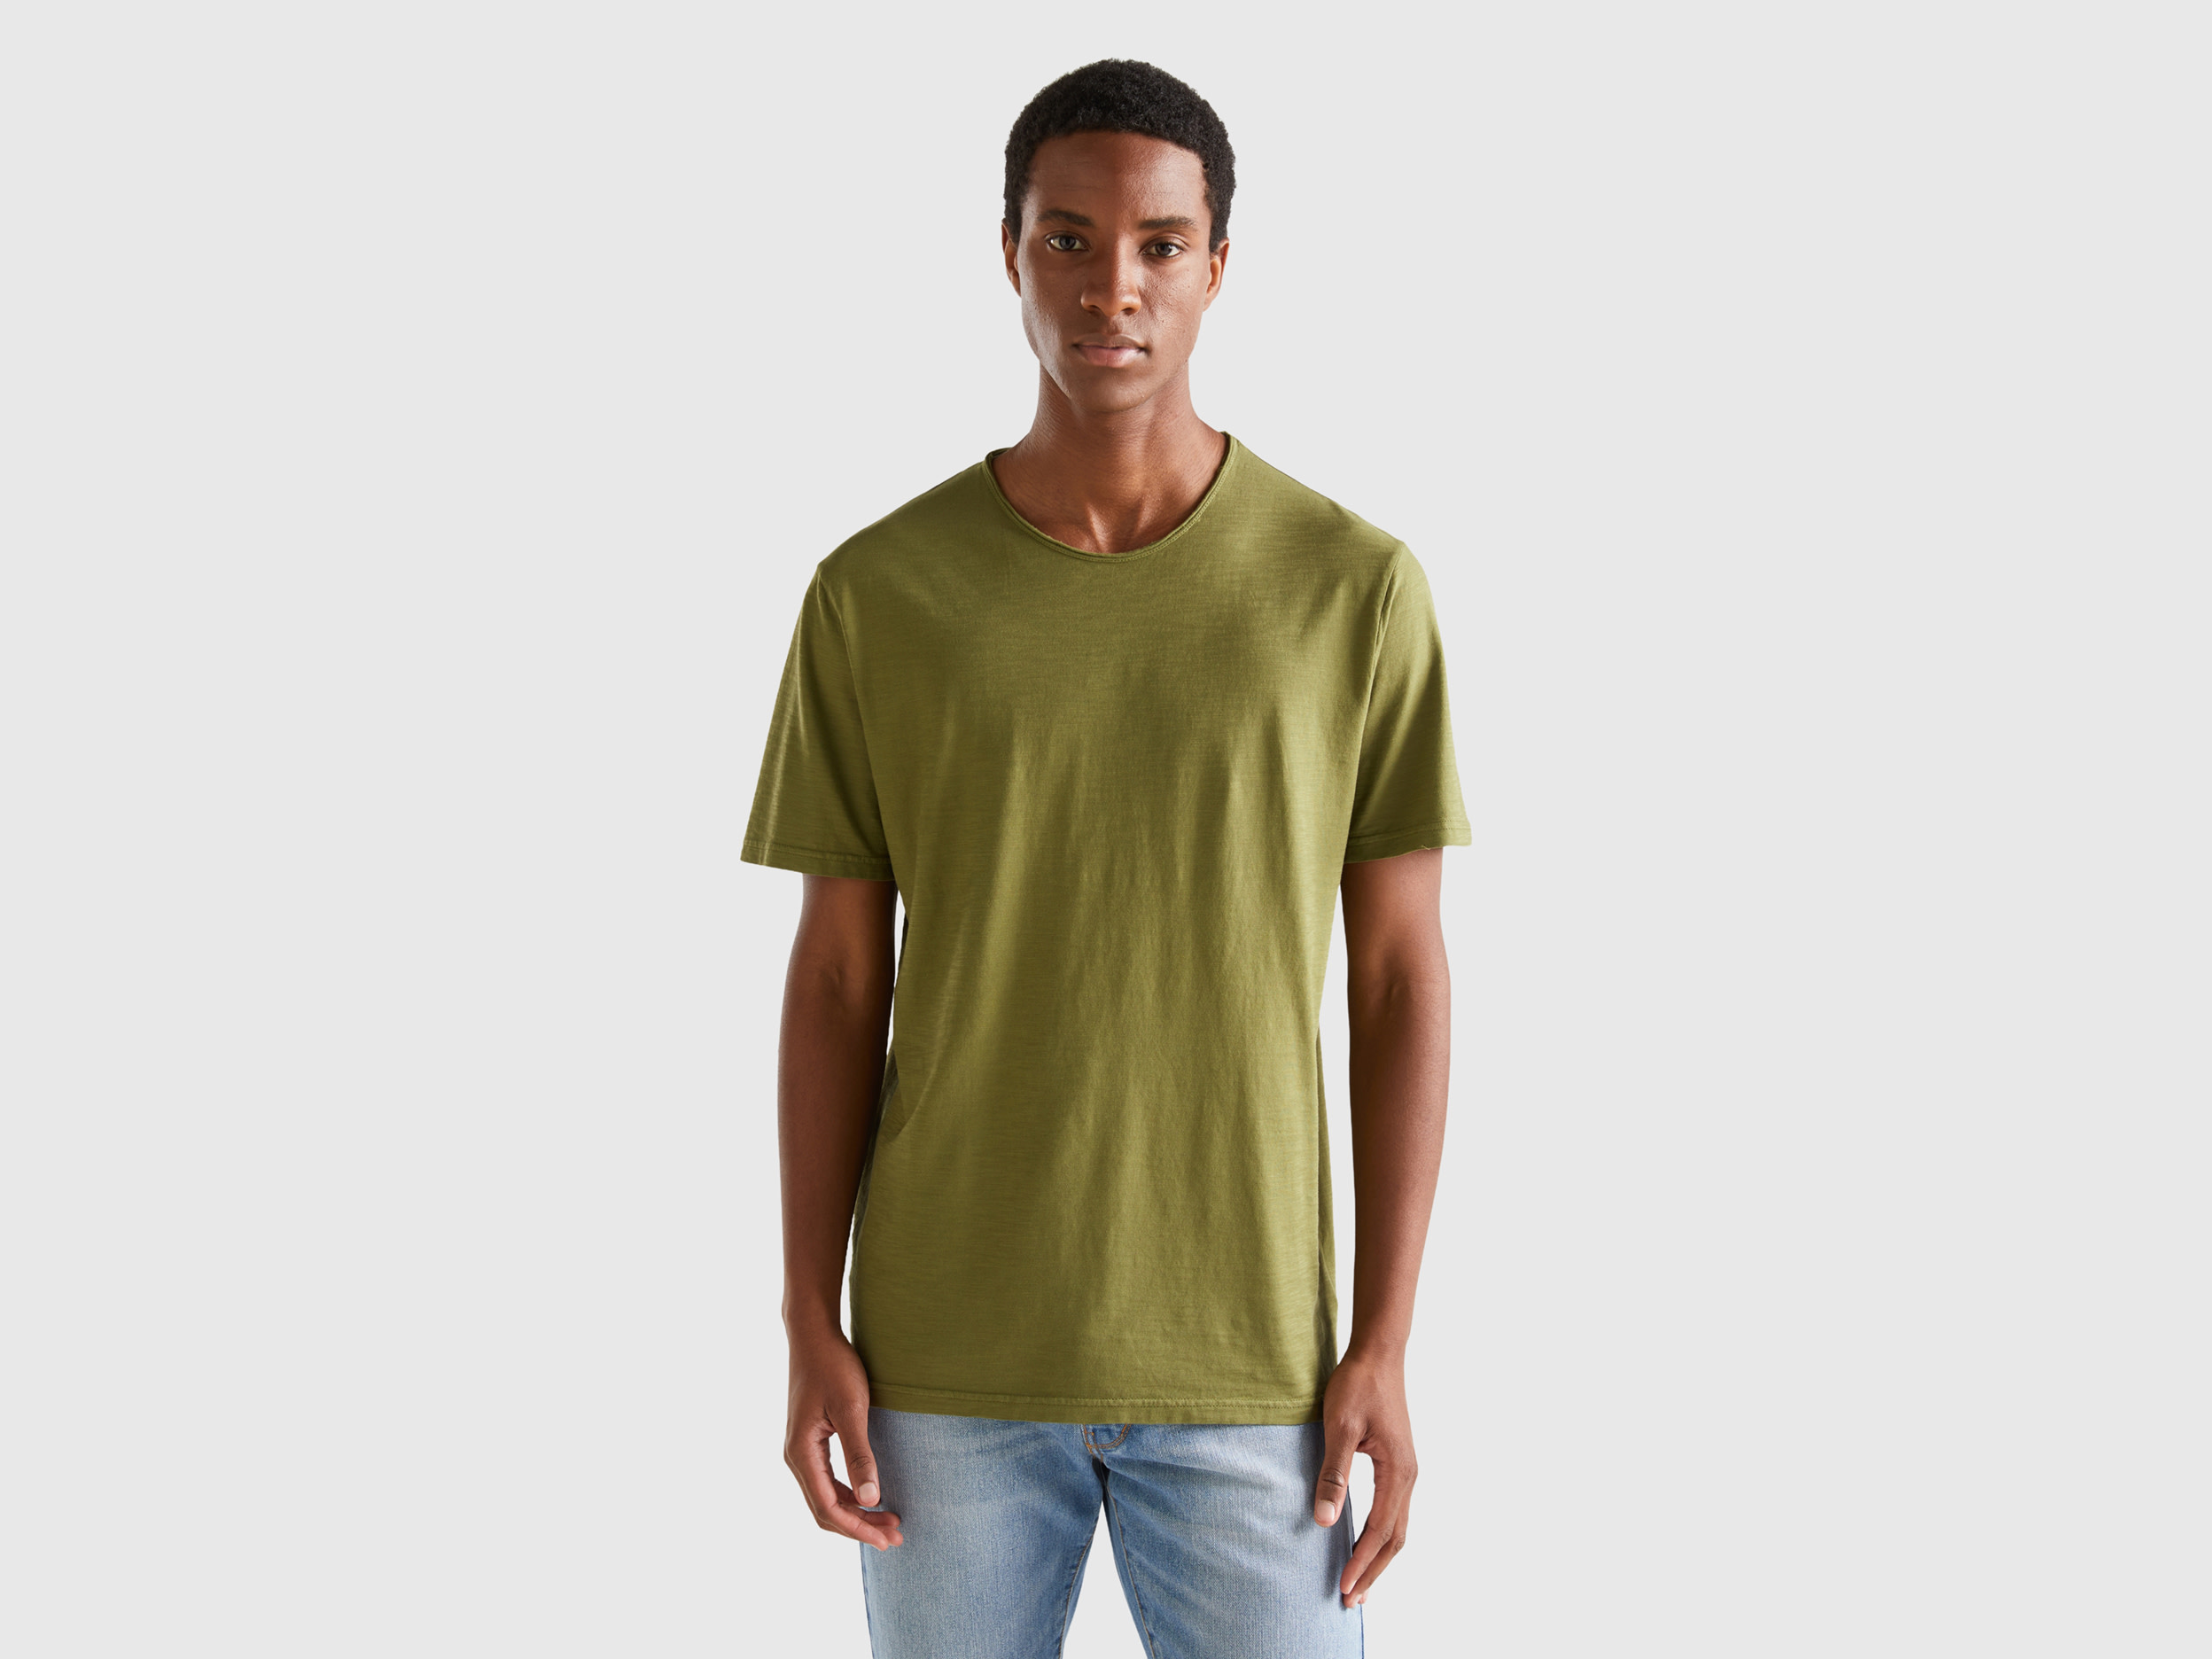 Benetton, Military Green T-shirt In Slub Cotton, size XXXL, Military Green, Men